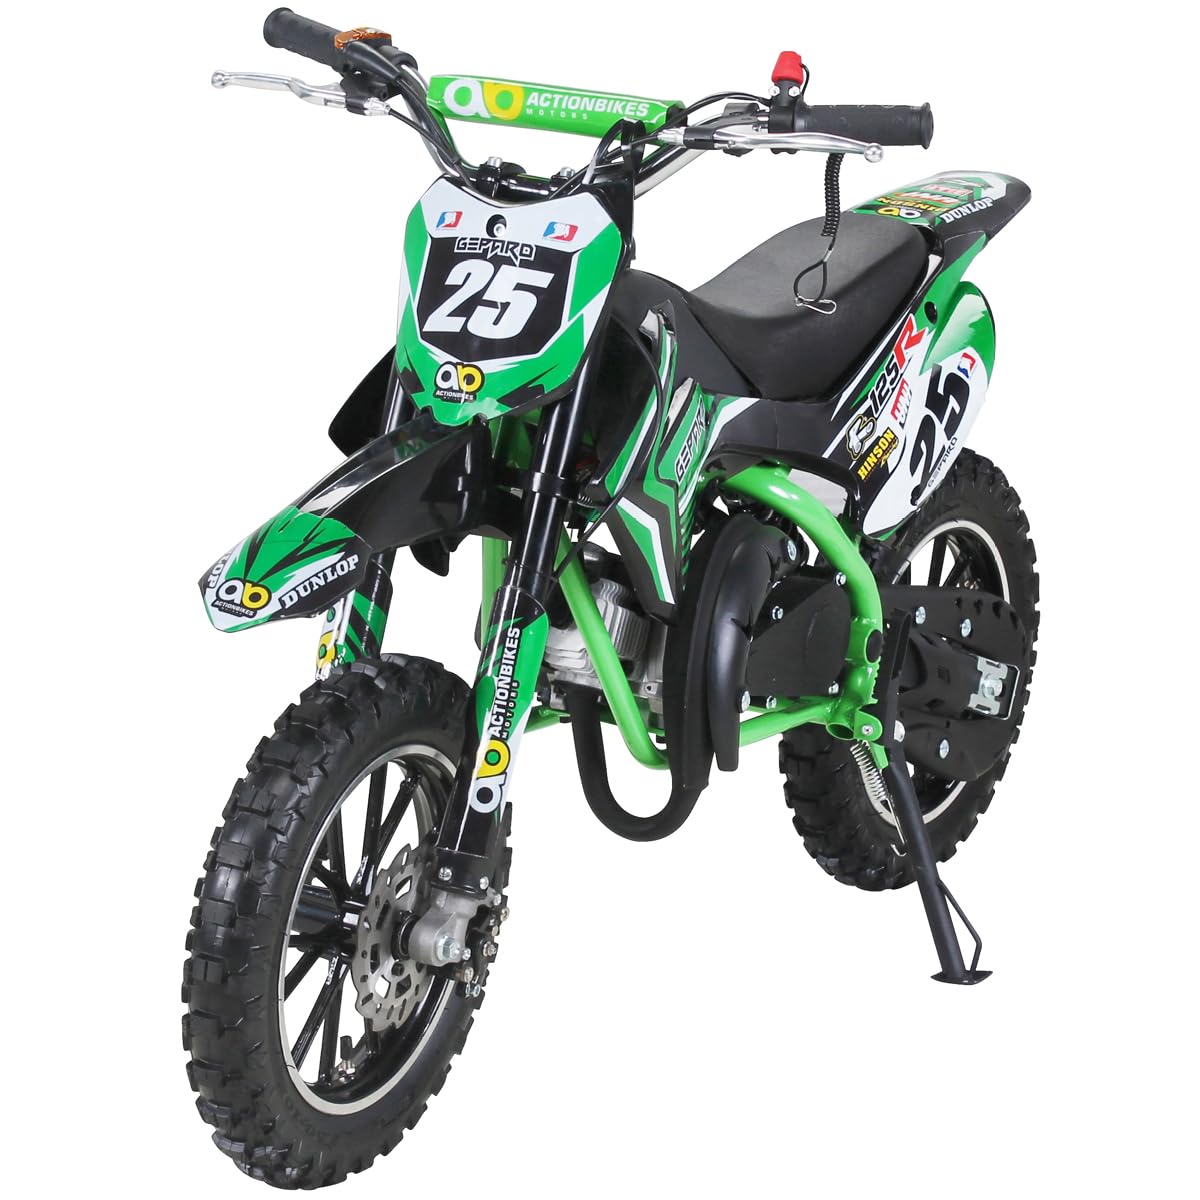 Actionbikes Motors Kinder Crossbike Gepard 2-Takt 49ccm | Bis 35 Km/h - 2 Liter Tank - Tuning Kupplung - Easy Pull Start - Scheibenbremsen - Motorrad - Motocross - Dirtbike - Enduro (Grün) von Actionbikes Motors